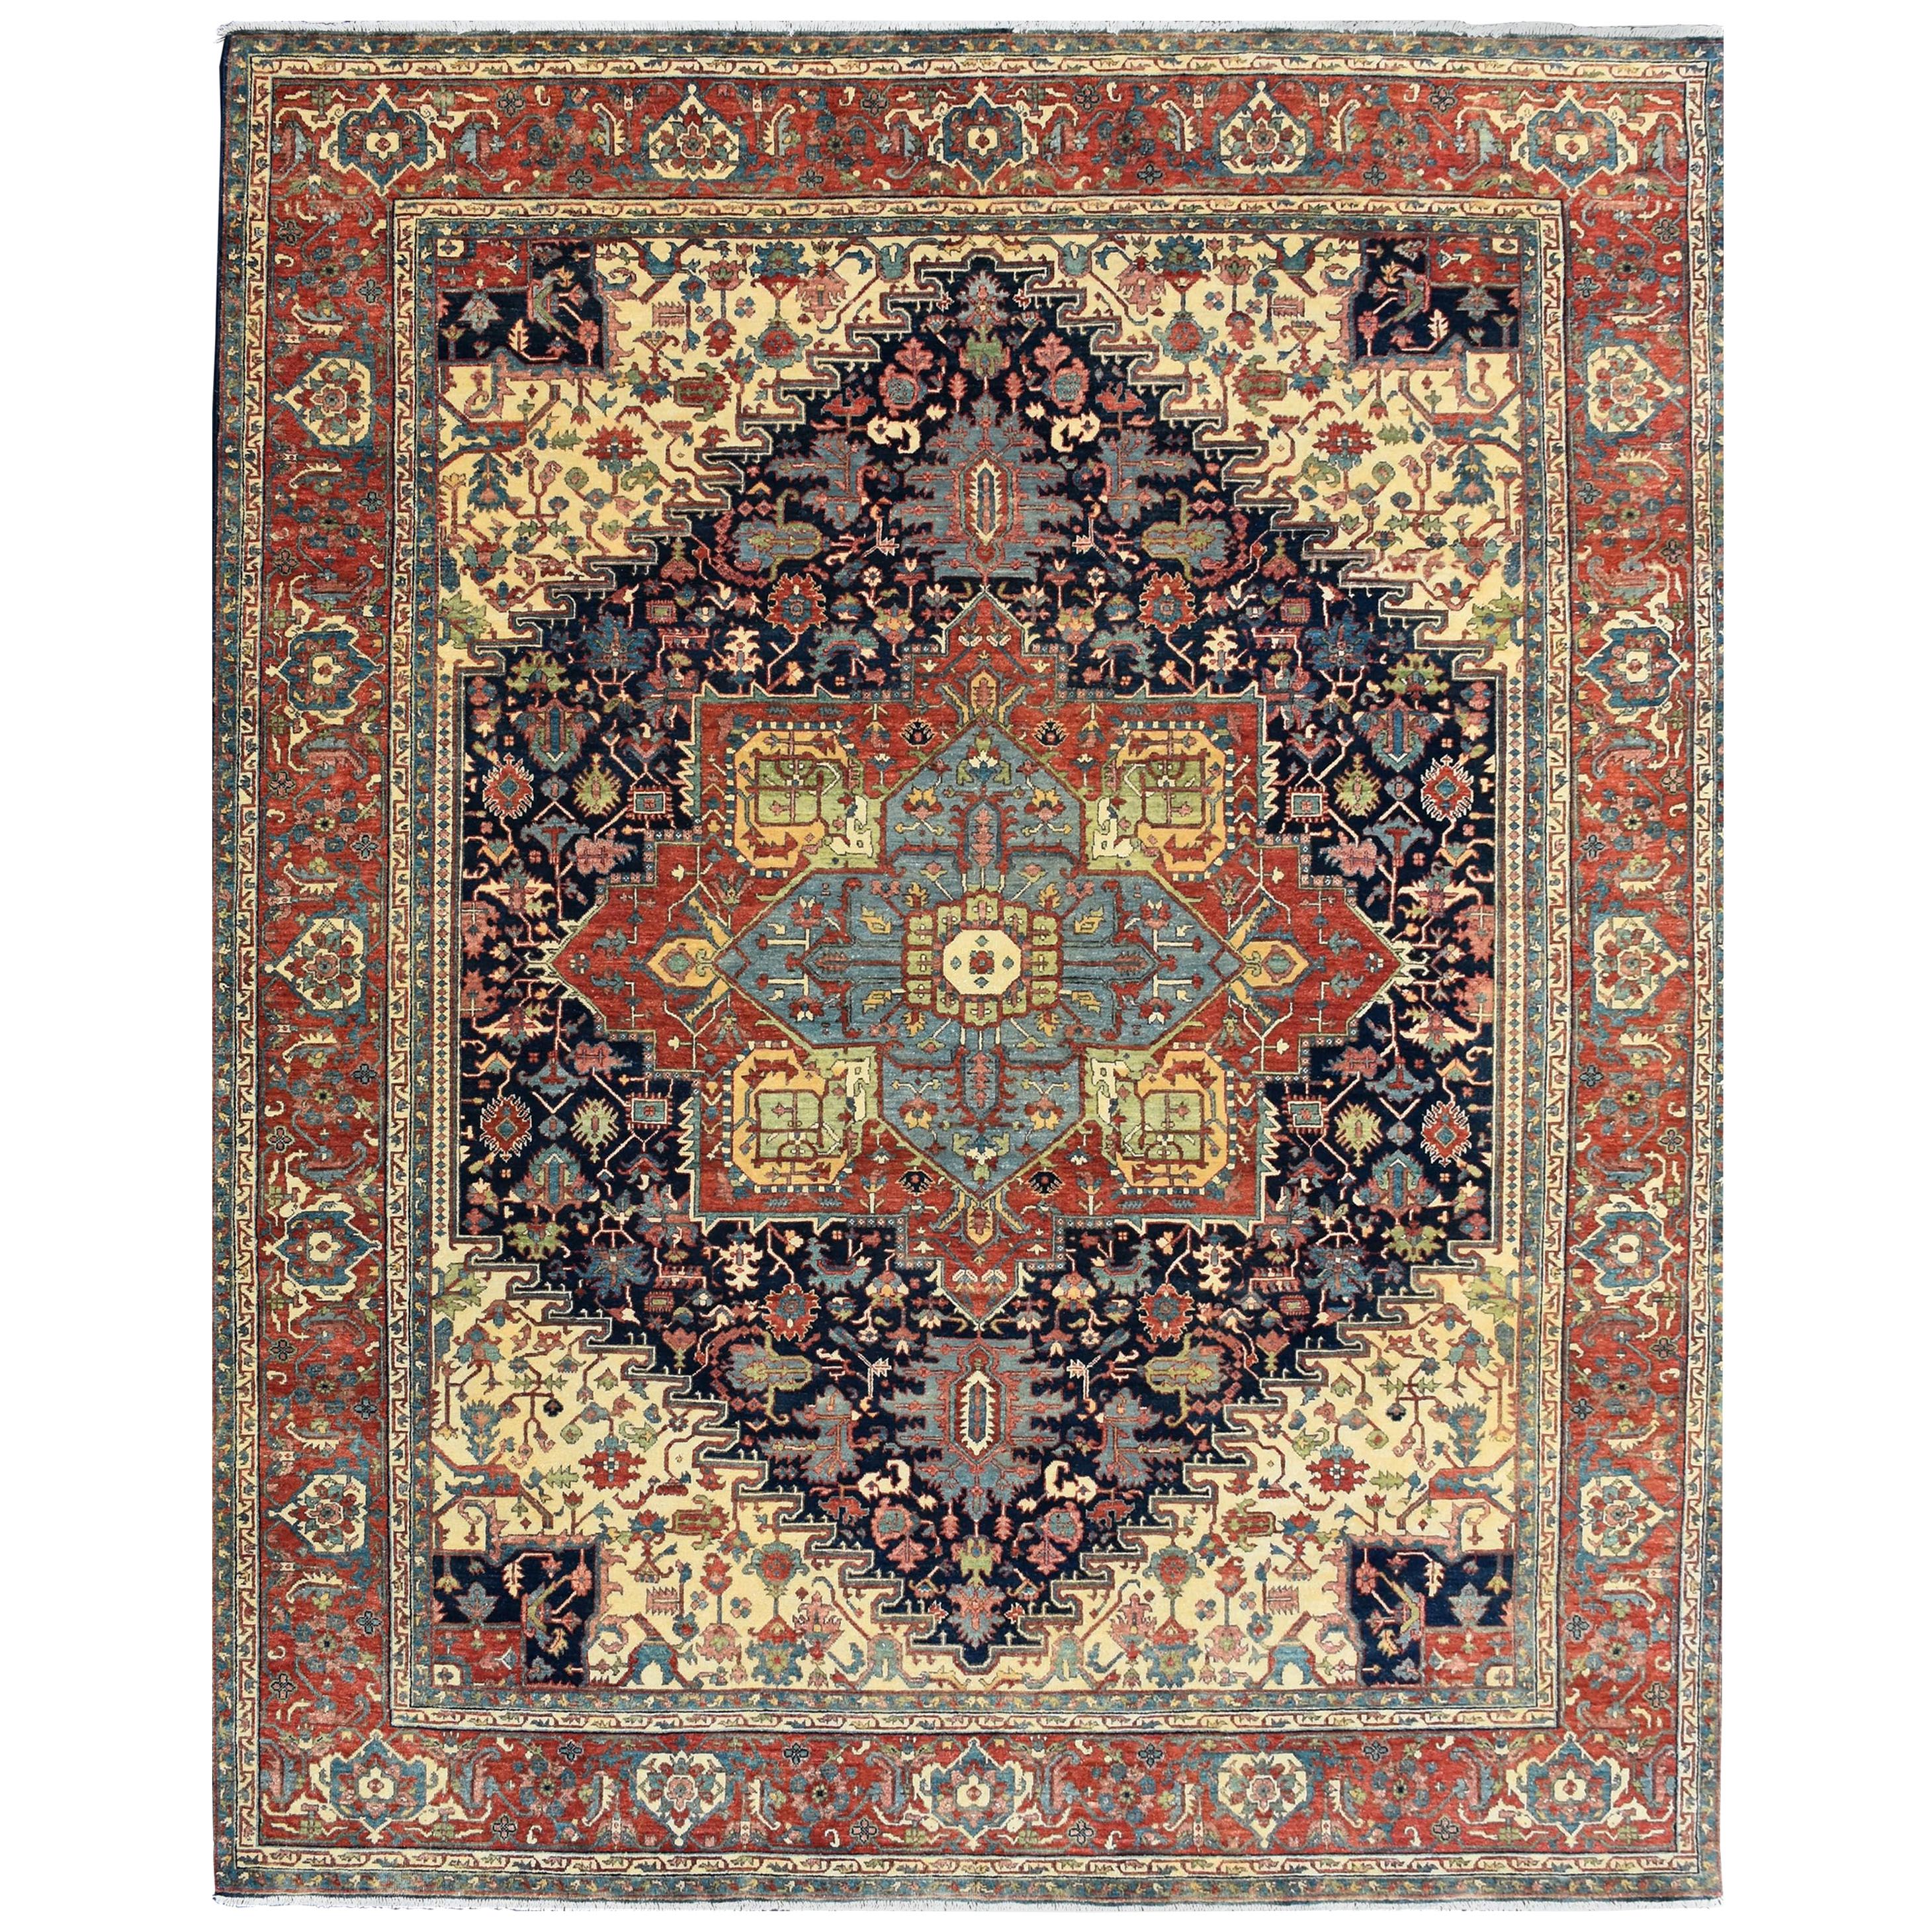 Magnifique tapis indien à motifs persans